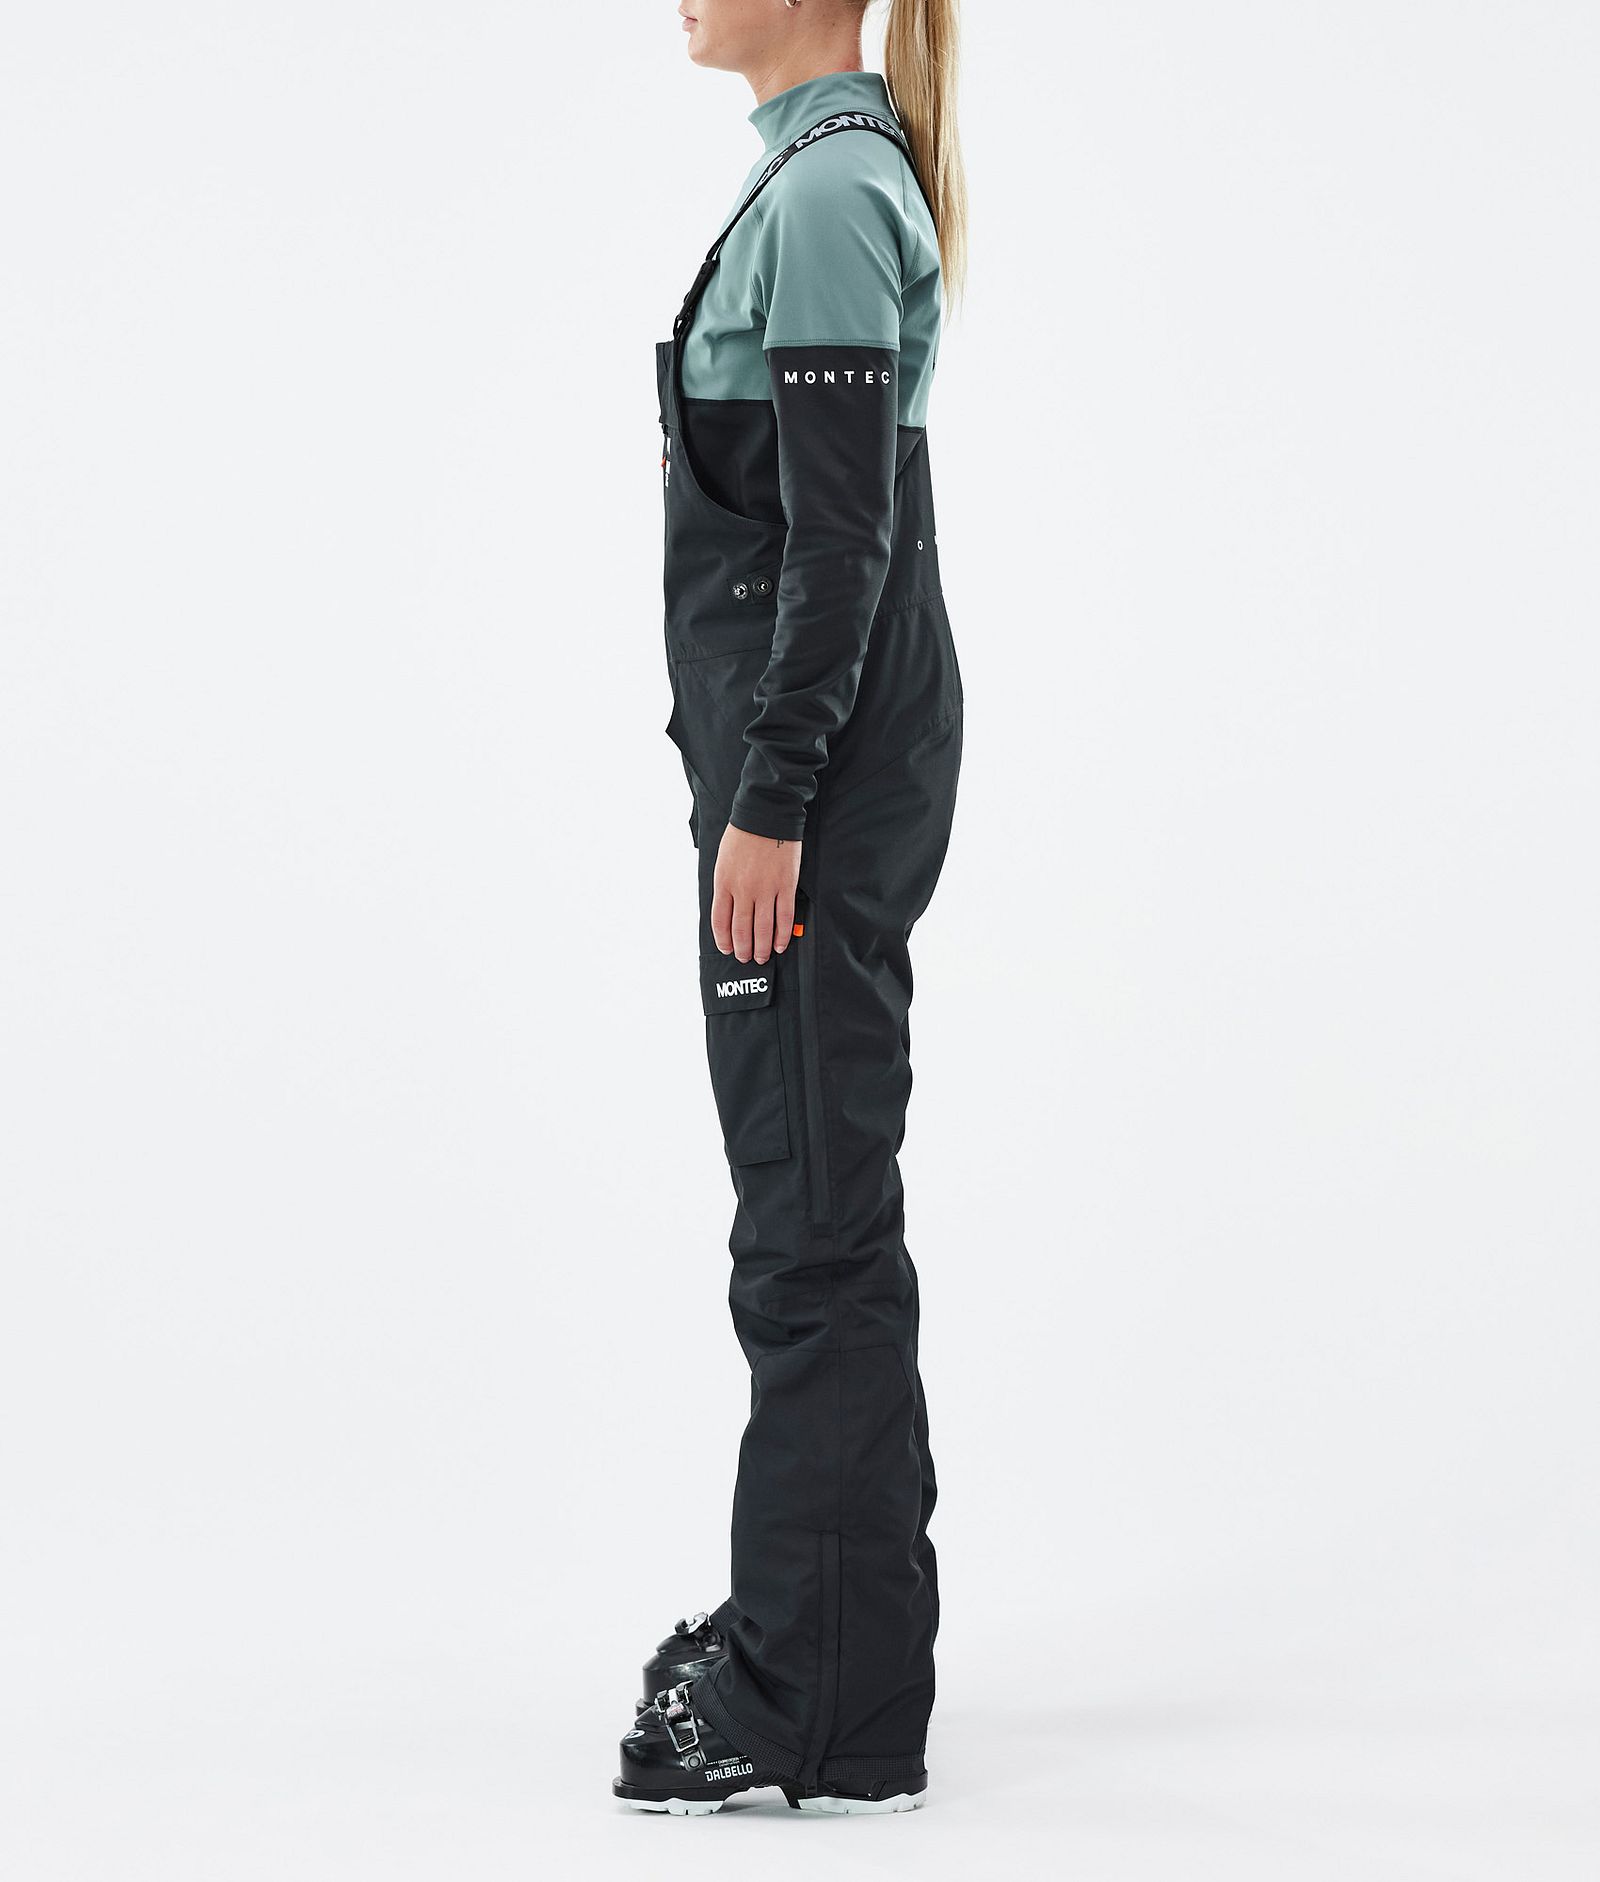 Women's Skiwear - Ski Pants in Black Faded